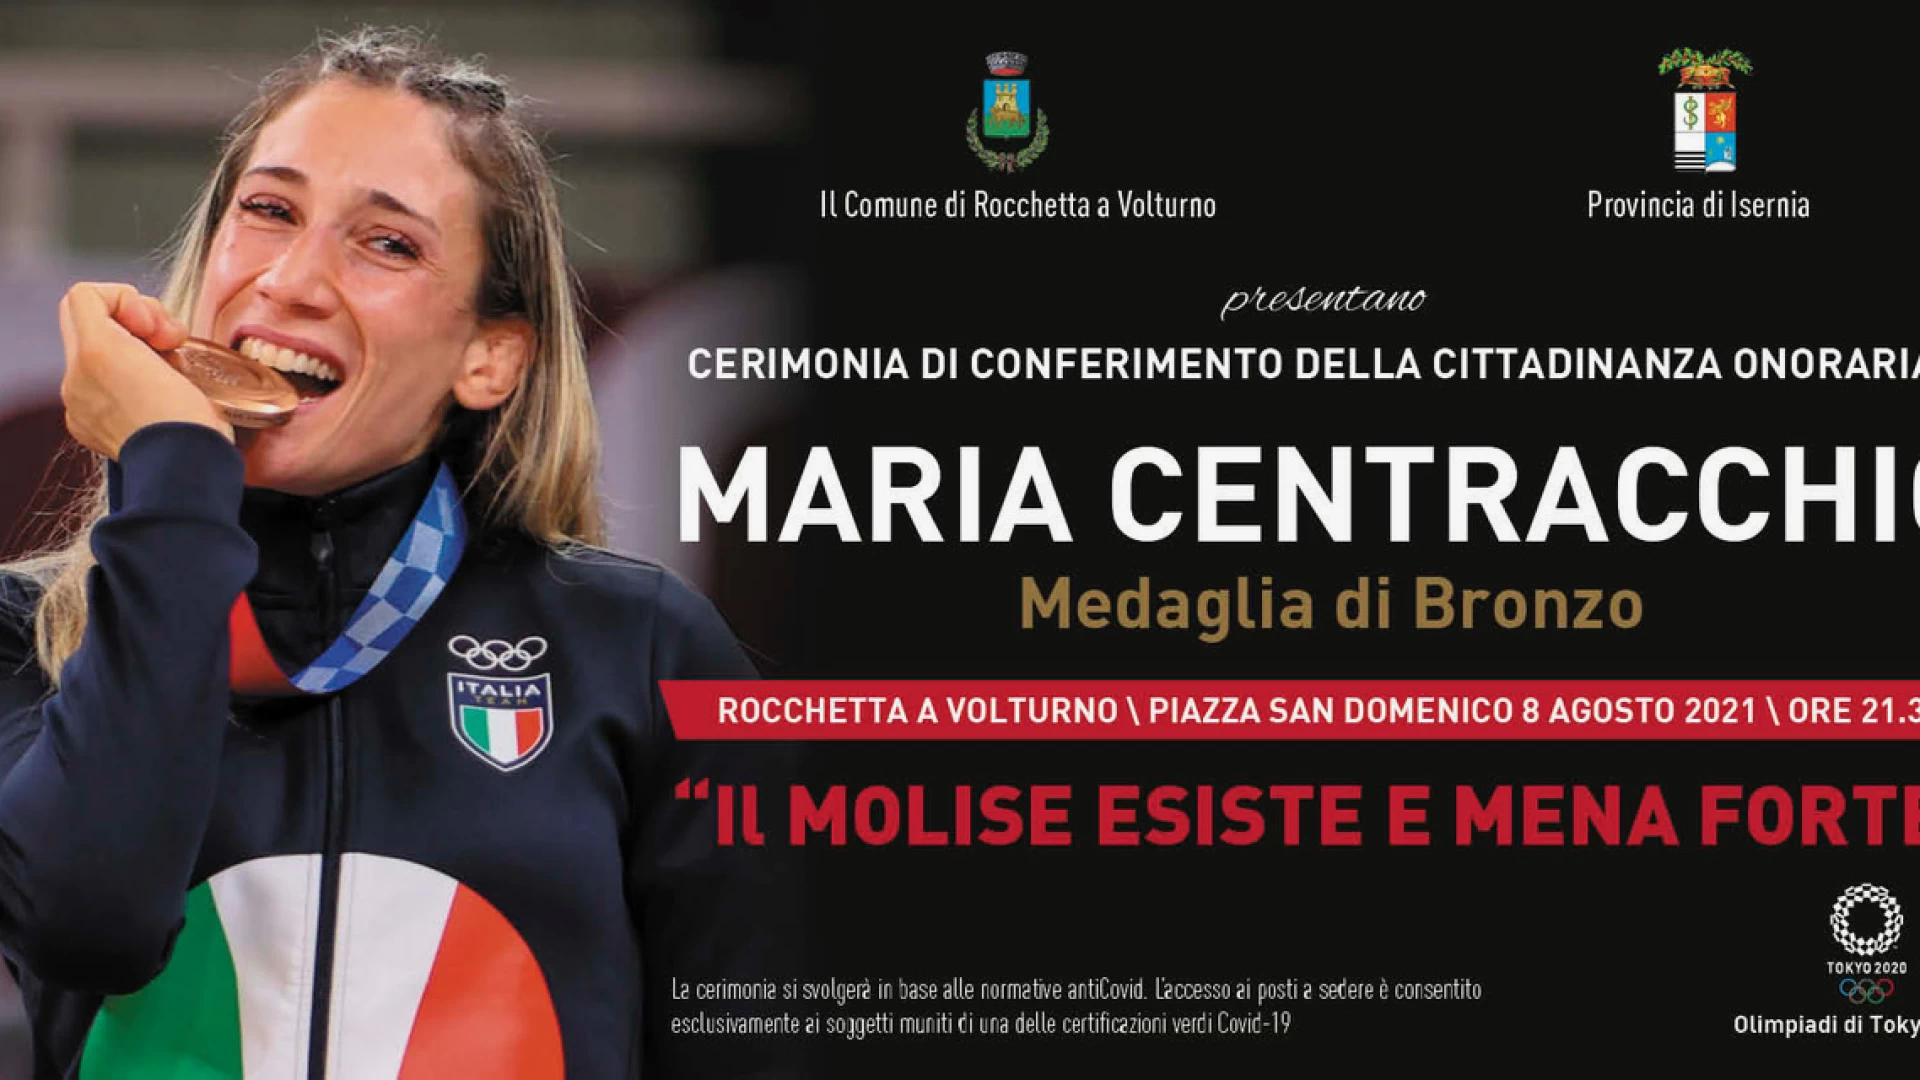 Rocchetta a Volturno omaggia Maria Centracchio. Domenica 8 agosto evento congiunto con la Provincia in Piazza San Domenico.